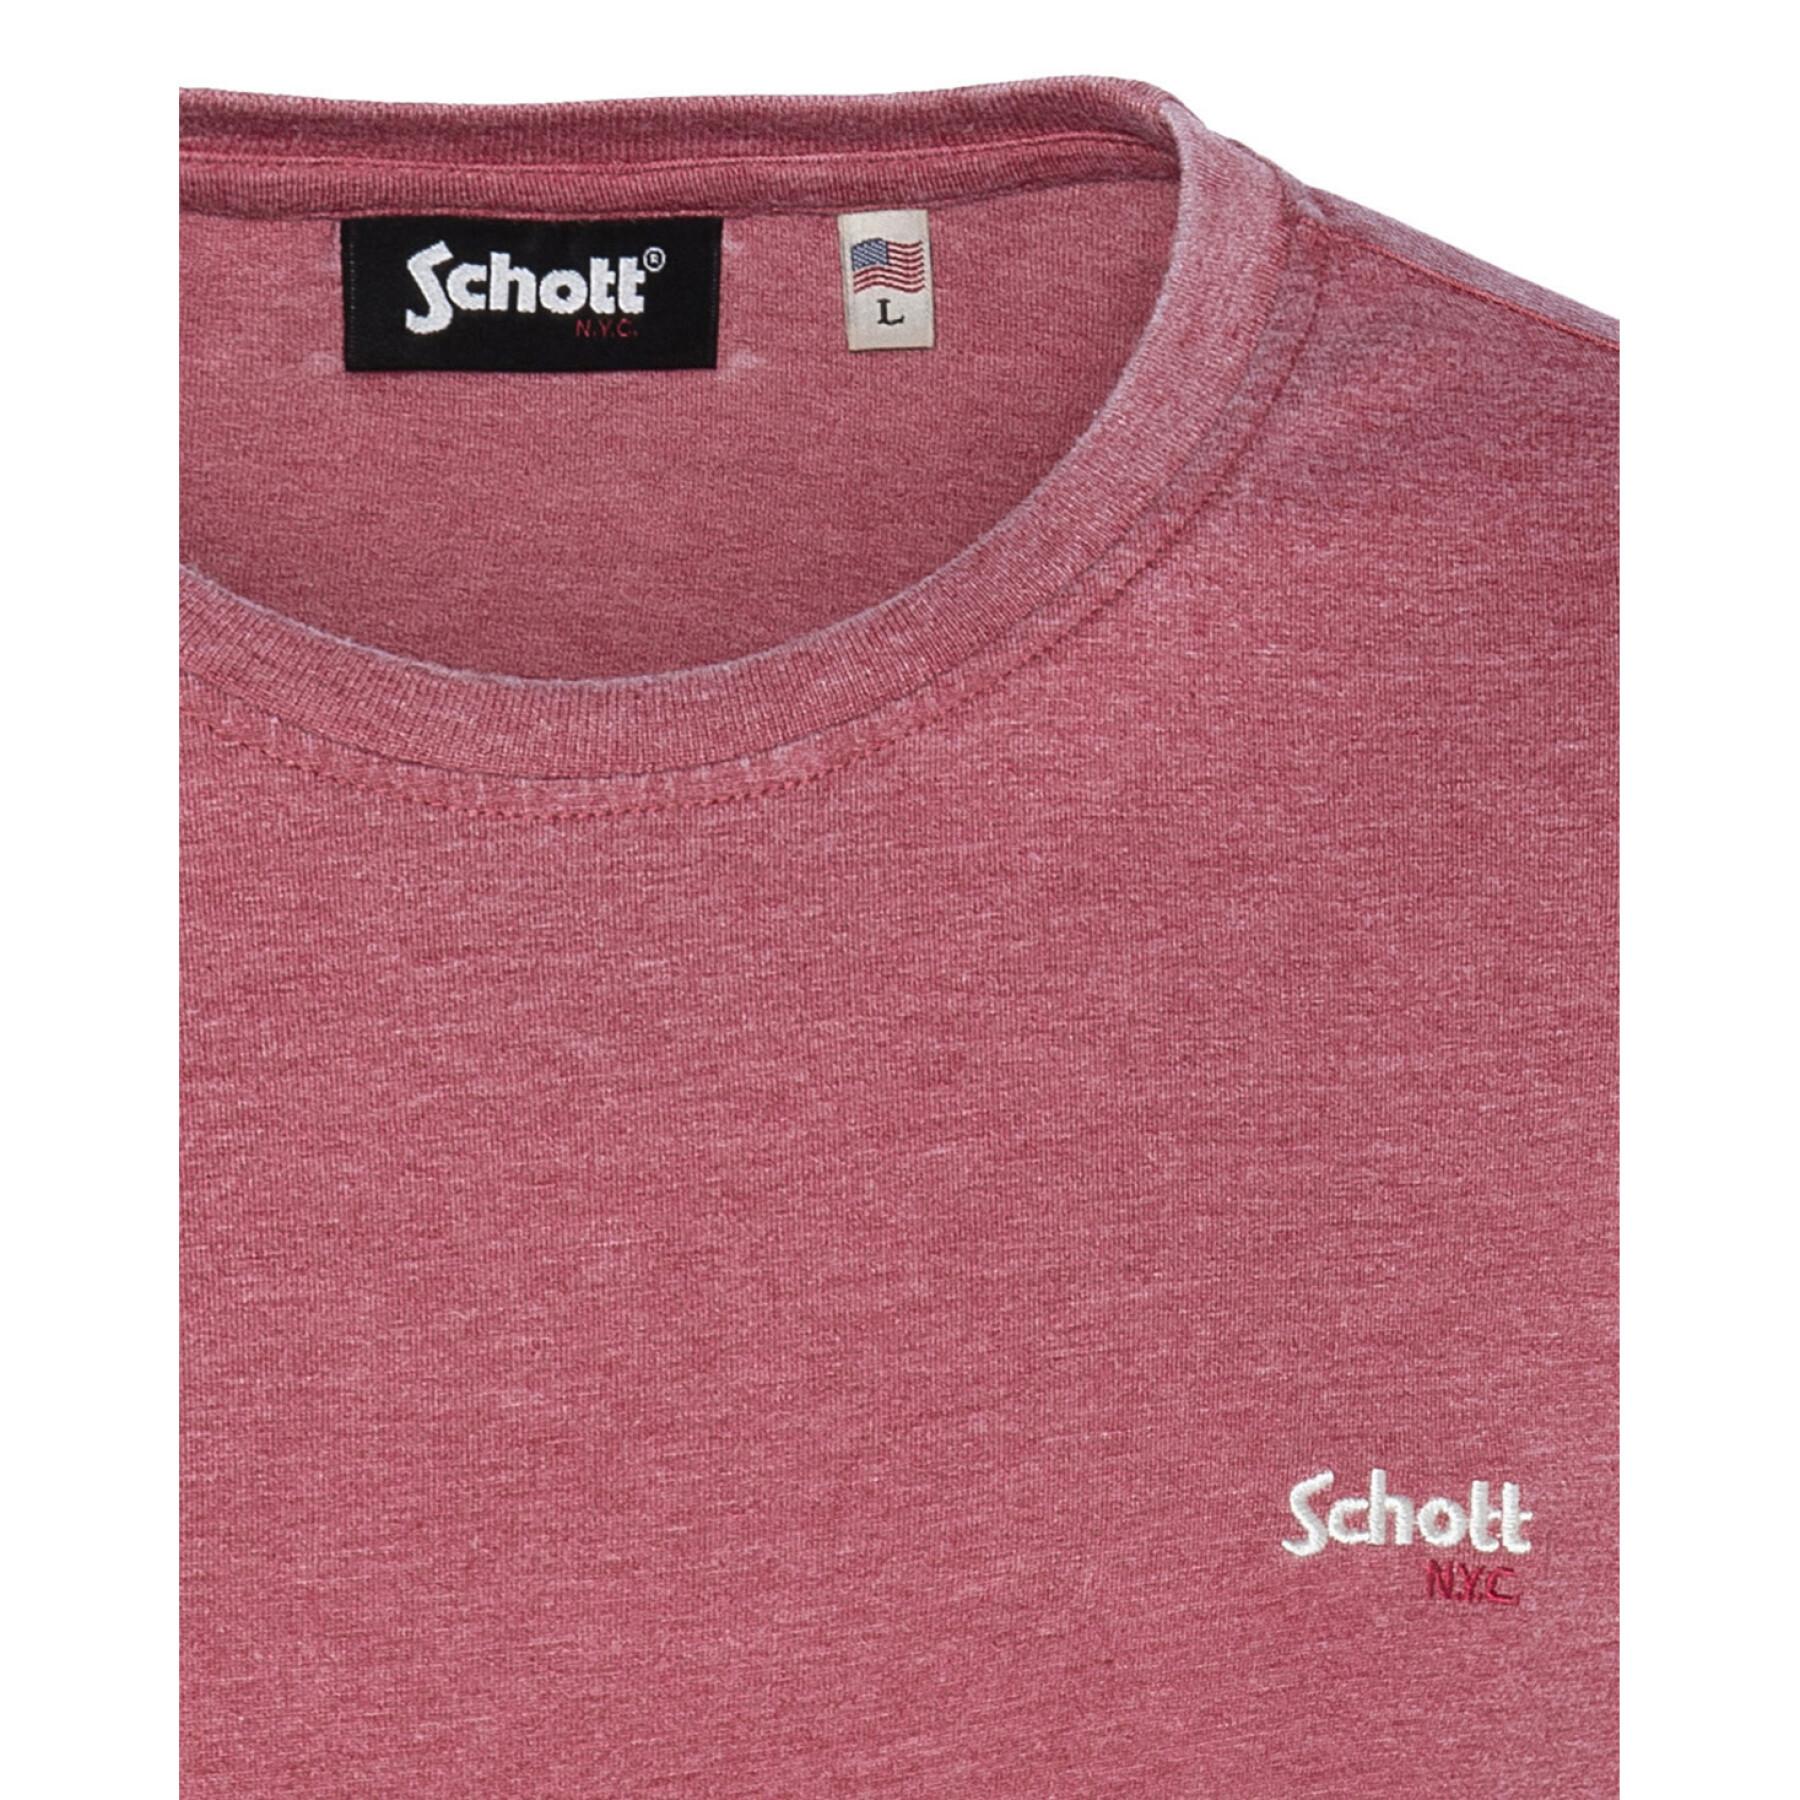 T-shirt Schott Mc Cn